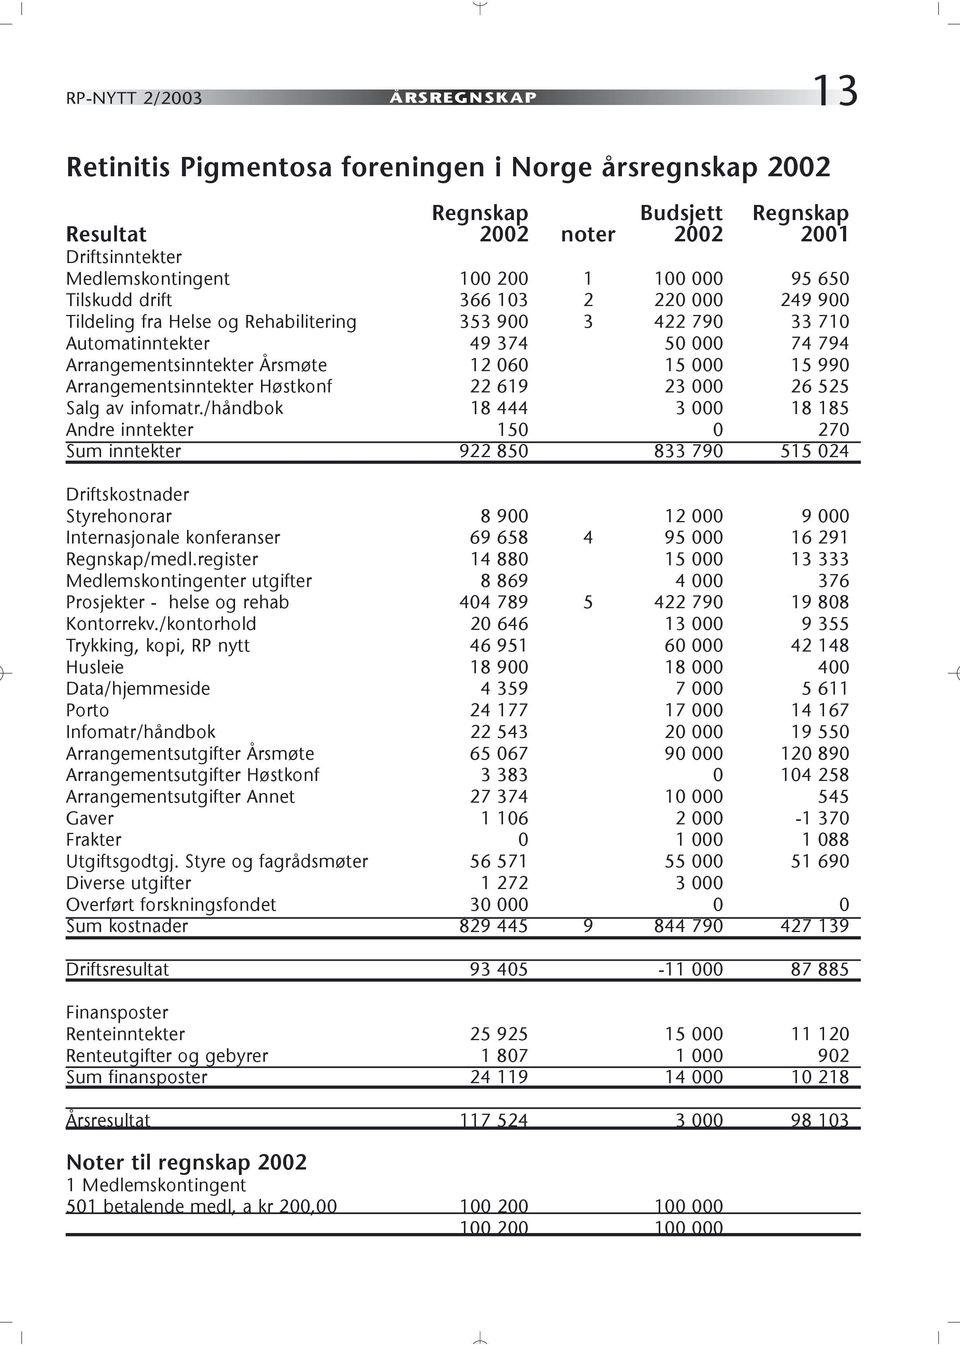 Arrangementsinntekter Høstkonf 22 619 23 000 26 525 Salg av infomatr.